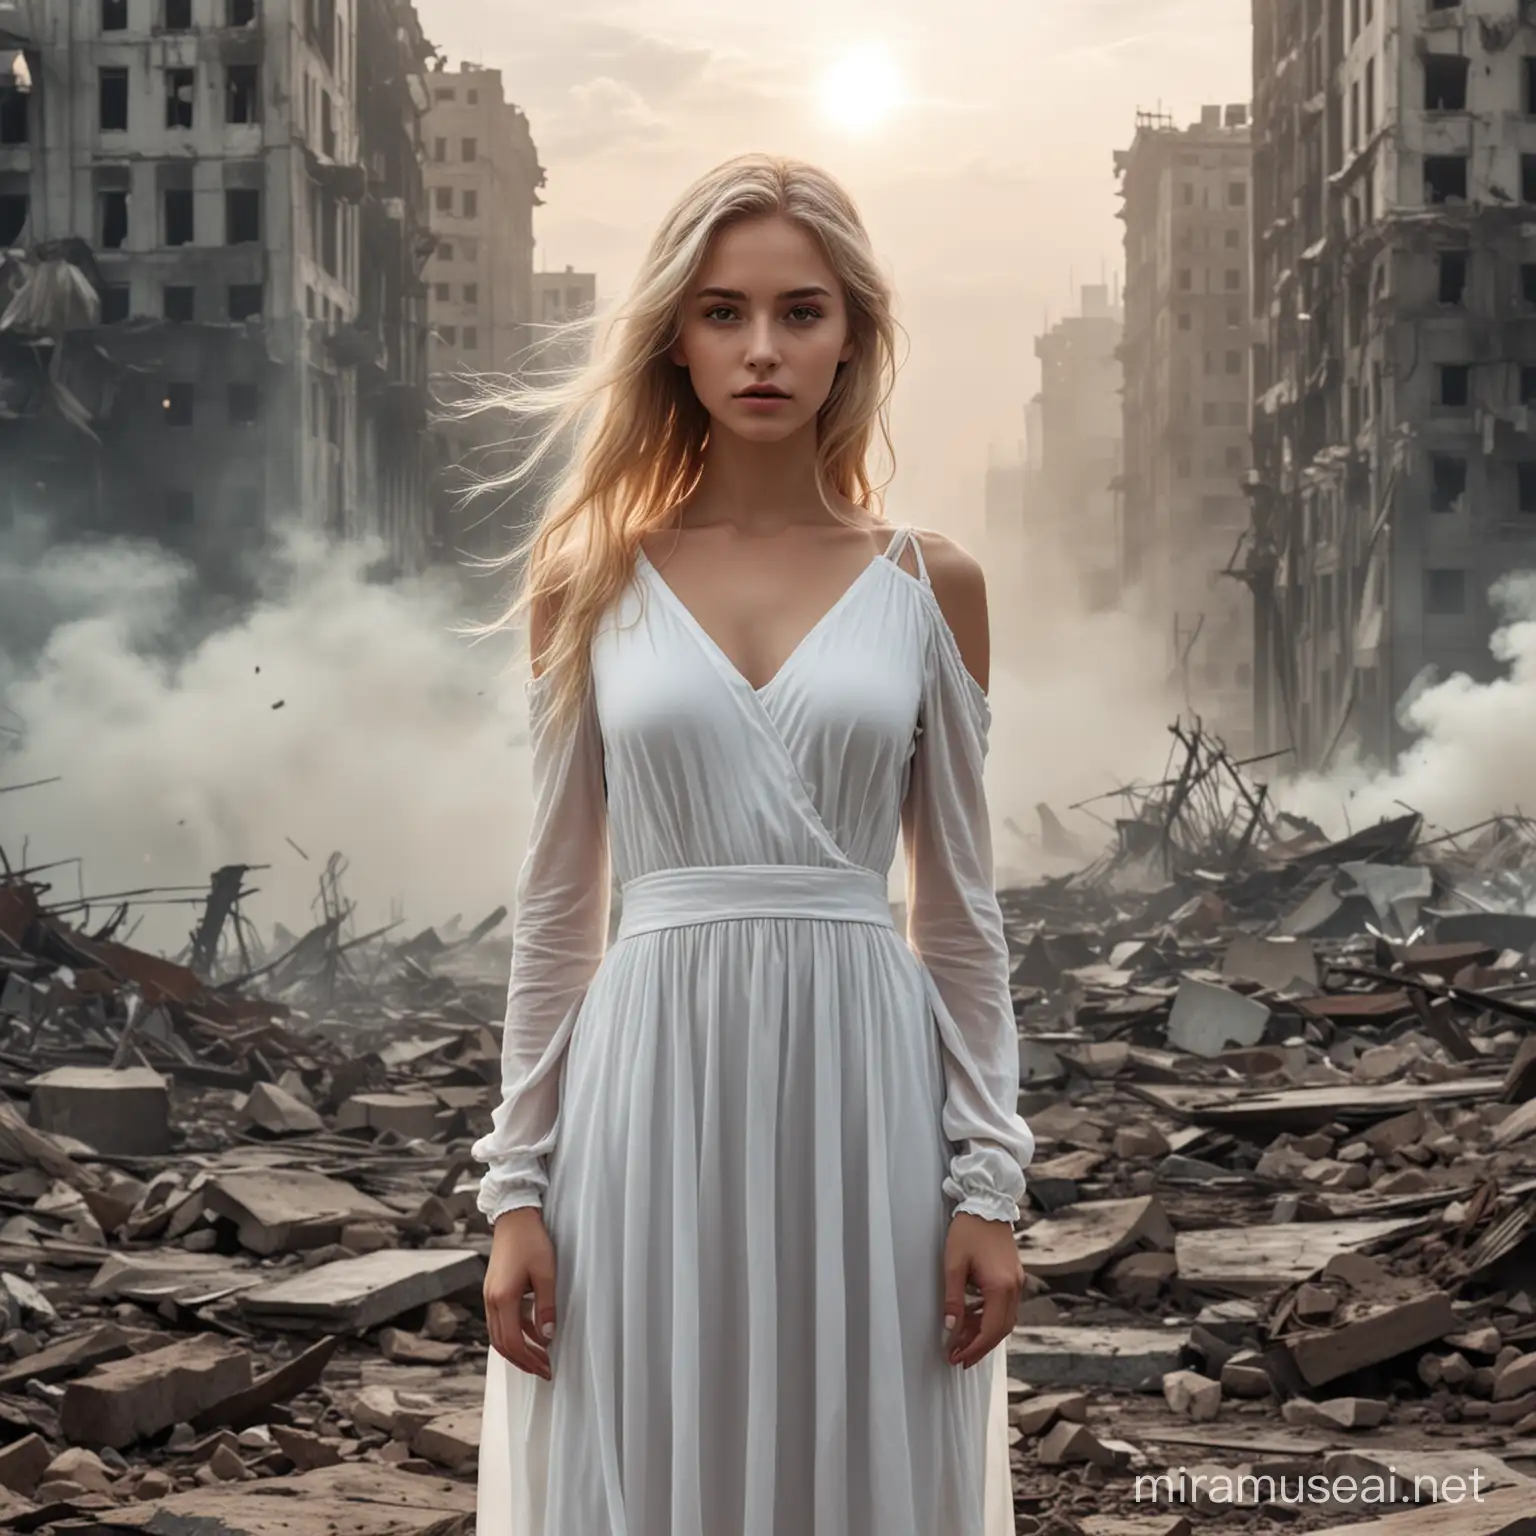 Девушка со светлыми волосами в белом платье  на фоне апокалипсиса